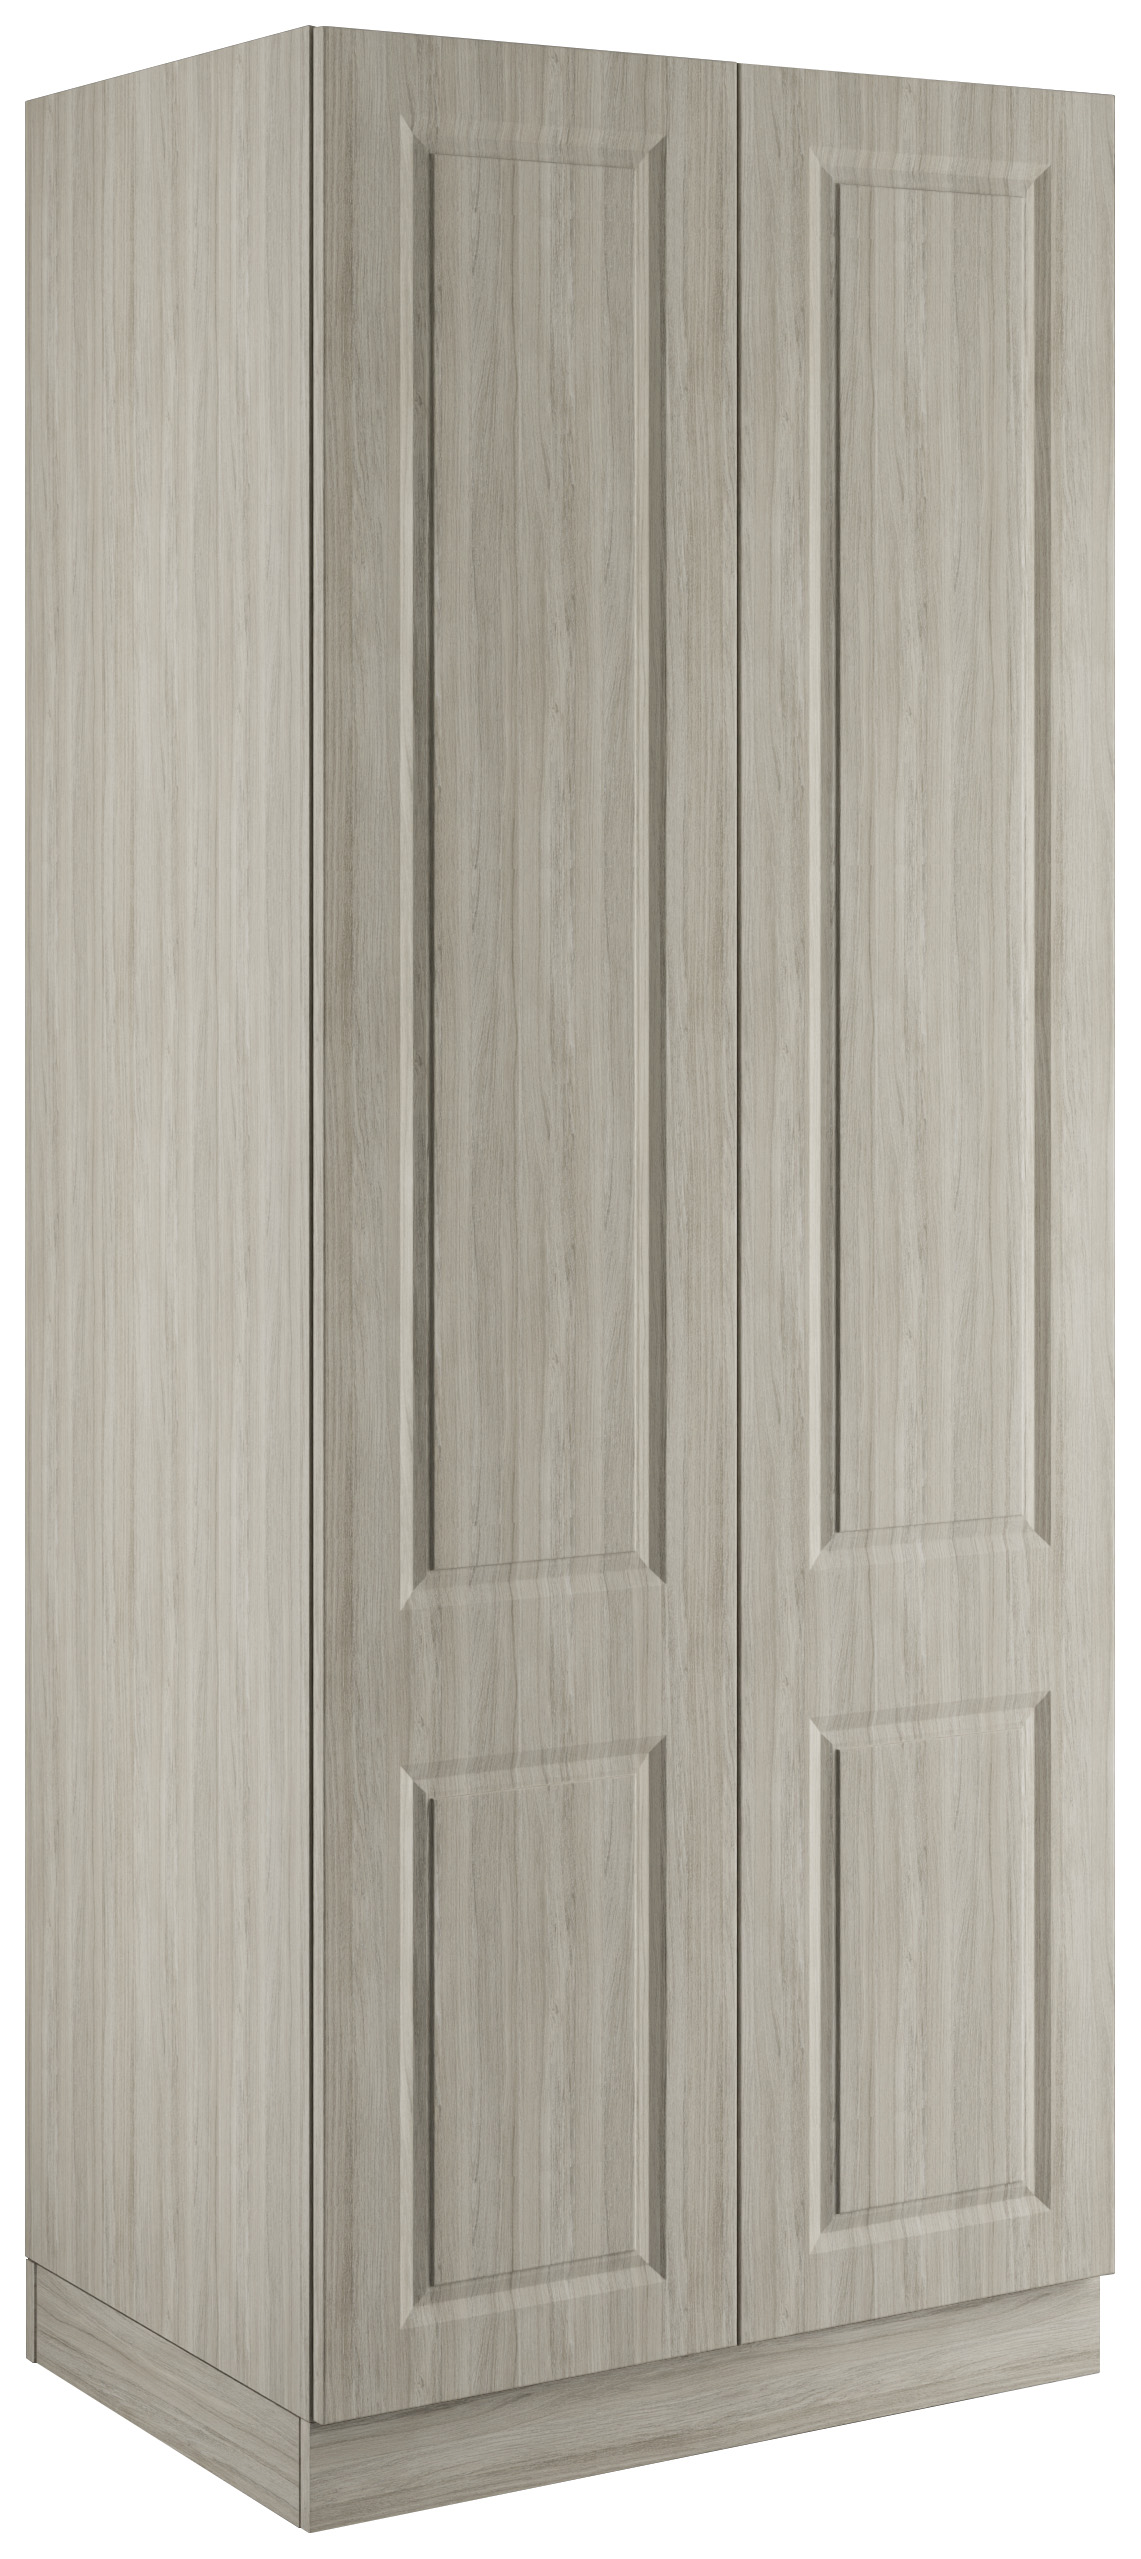 Harrogate Urban Oak Double Wardrobe with Single Rail & Internal Drawers - 900 x 2260 x 608mm